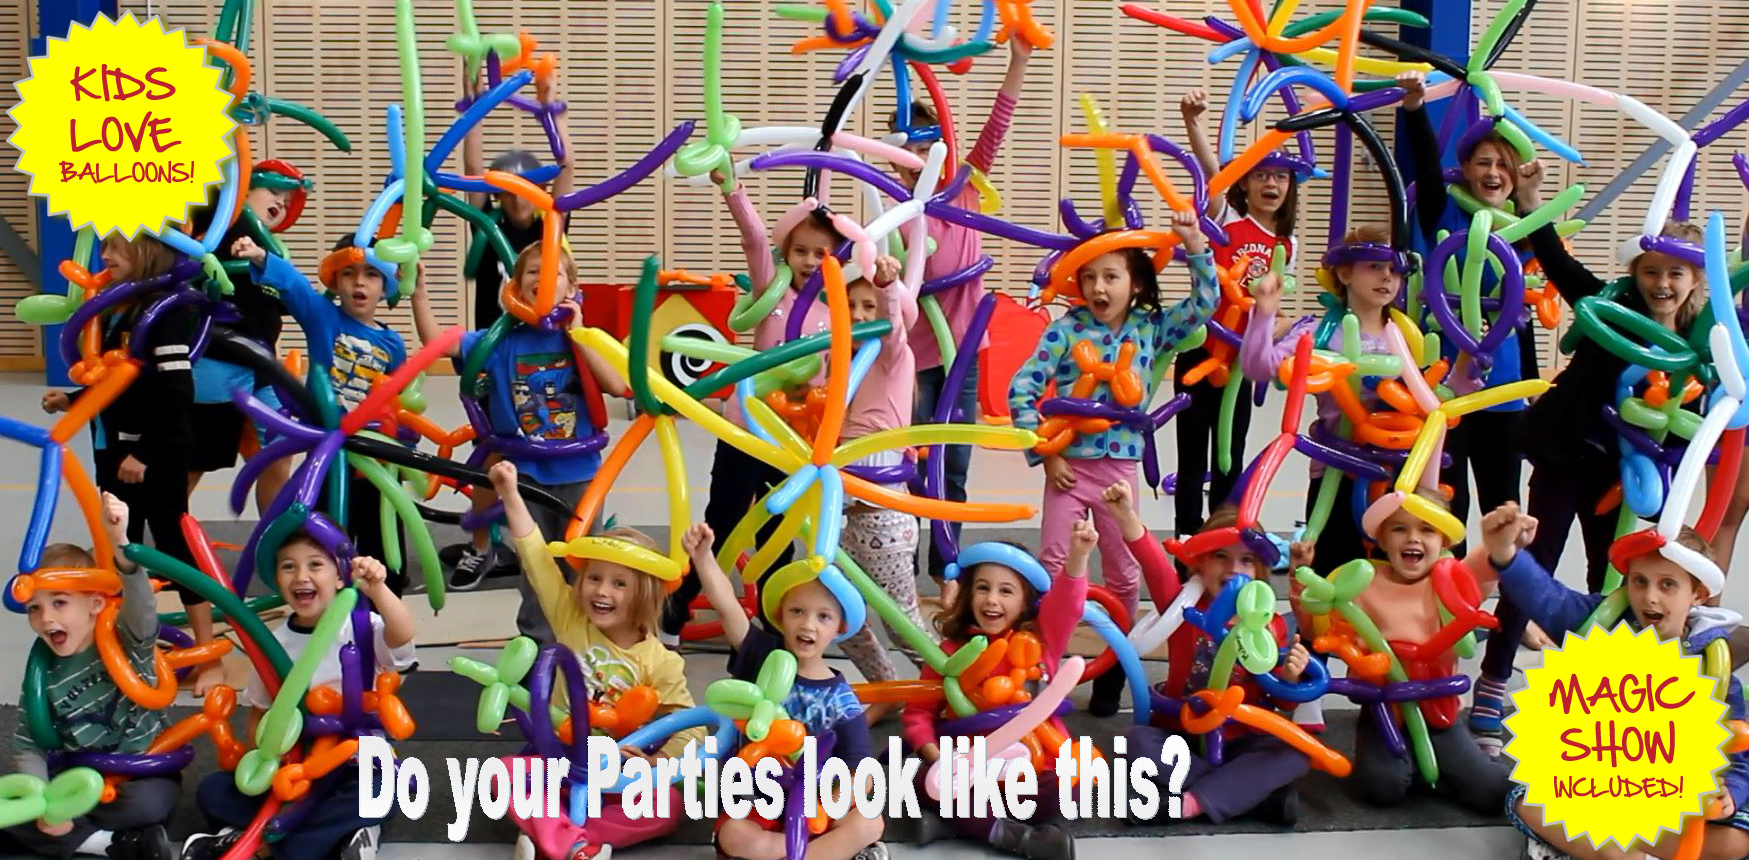 kids parties